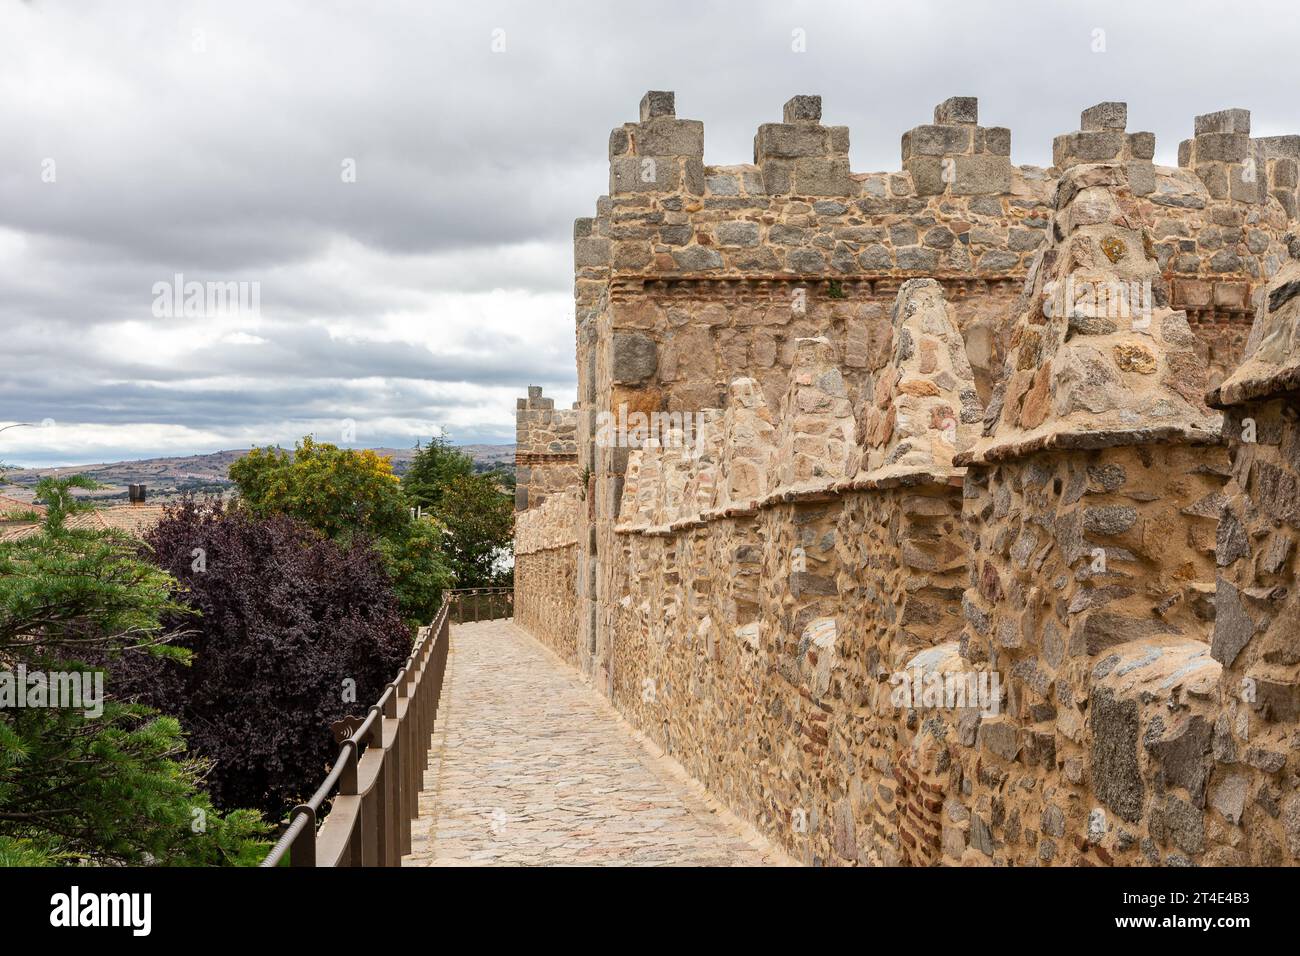 Mura di Avila (Muralla de Avila), Spagna, mura romaniche medievali in pietra con torri, merlature e sentieri in pietra che si affacciano su colline e colline Foto Stock